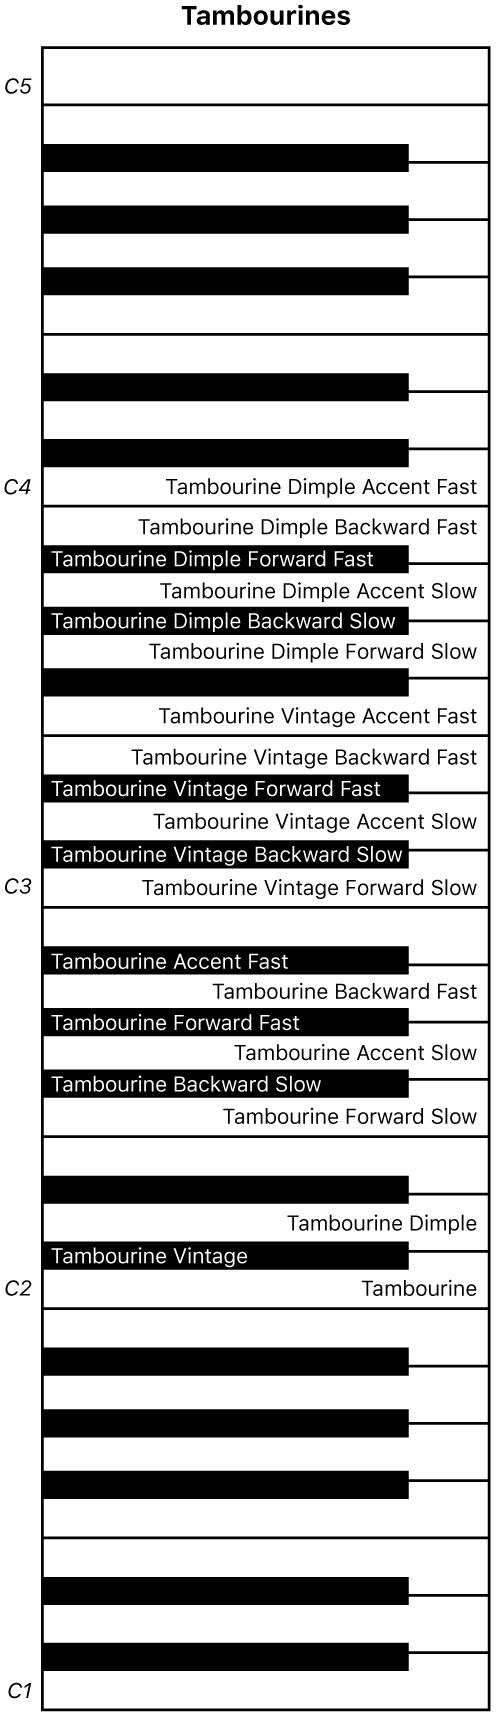 Kuva. Tambourines-esityskoskettimistokartta.